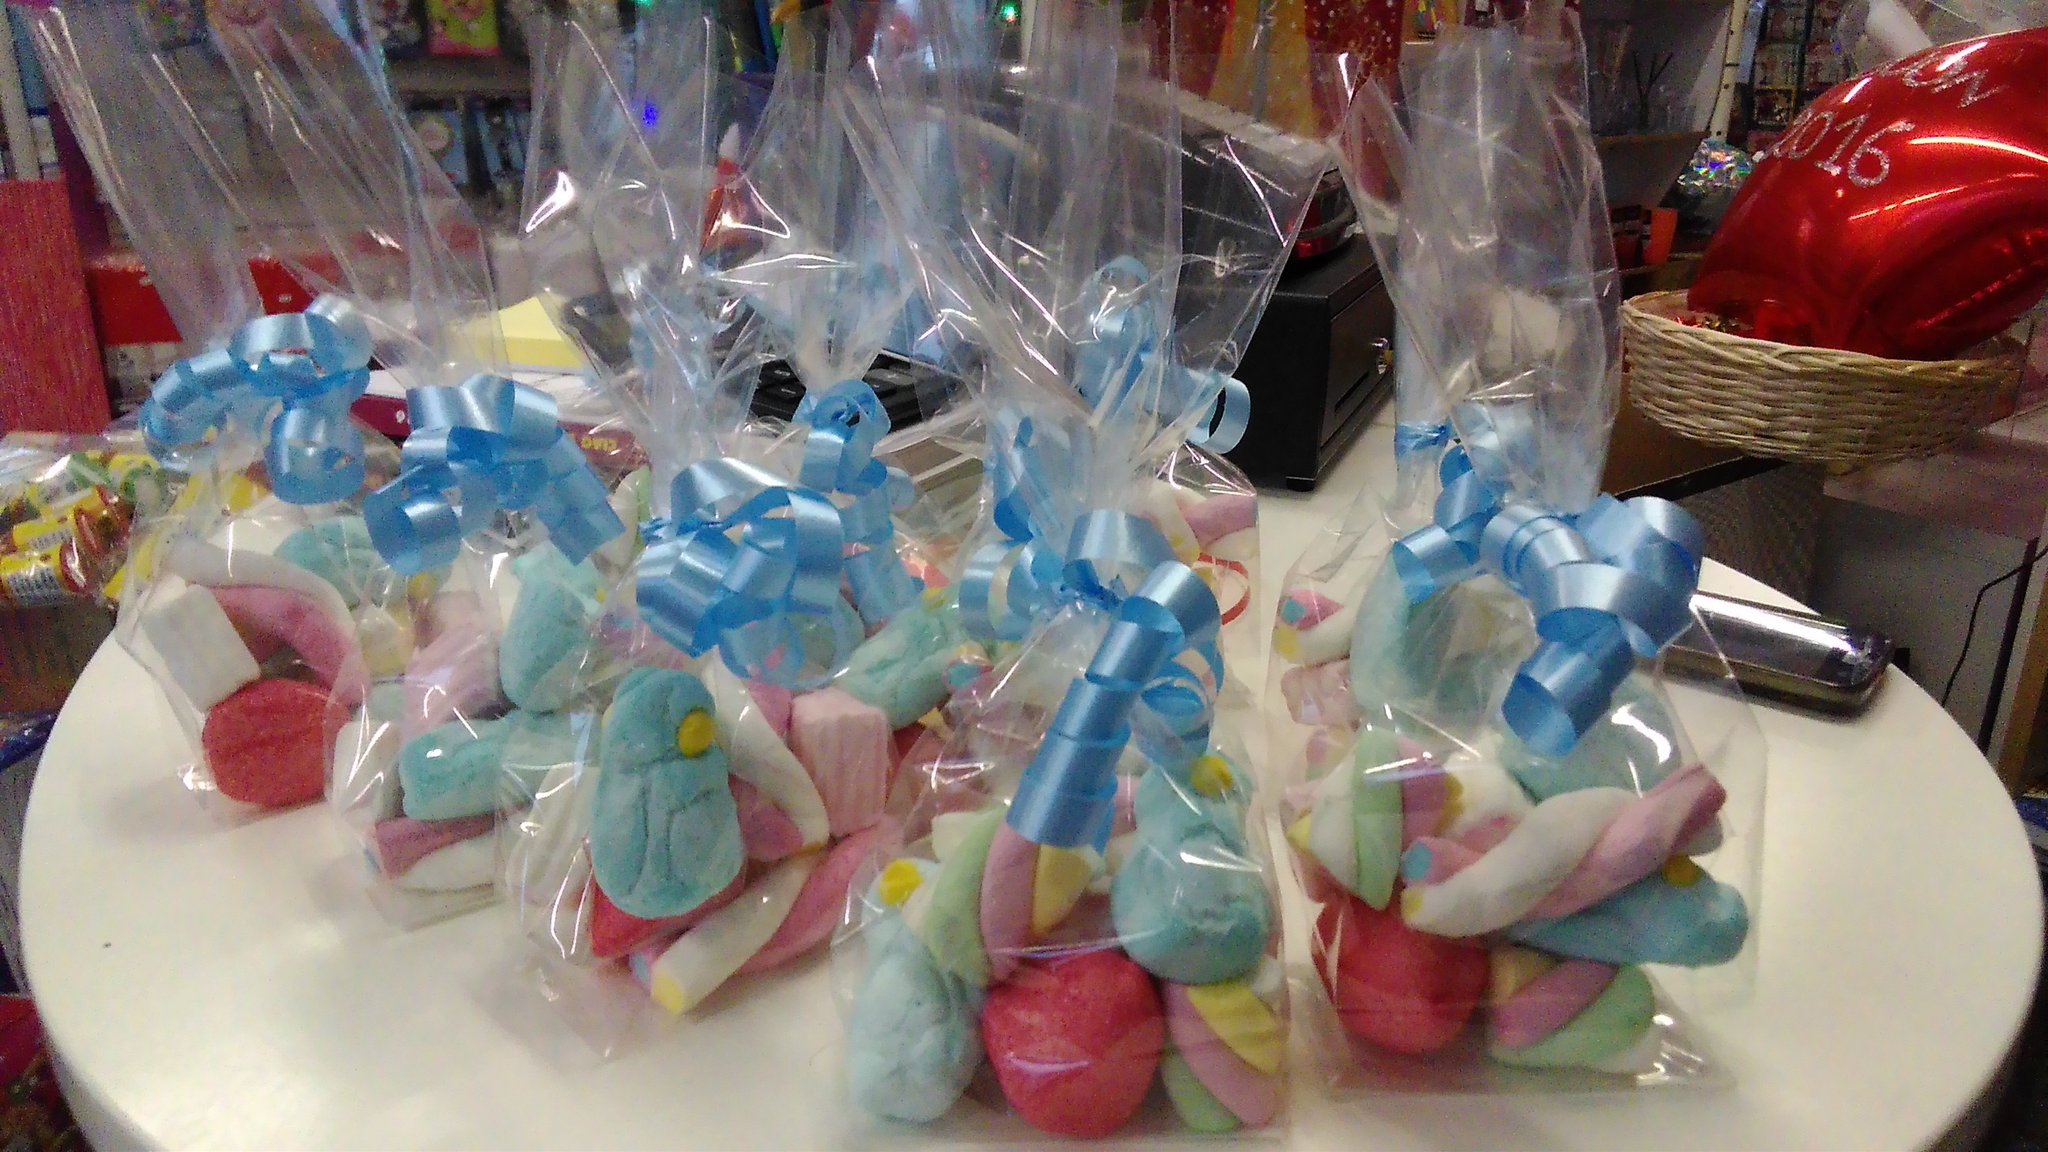 Come per Incanto on X: #regali #caramelle #dolci #compleanno #auguri da  noi simpatici sacchettini di caramelle colorati e personalizzati!   / X